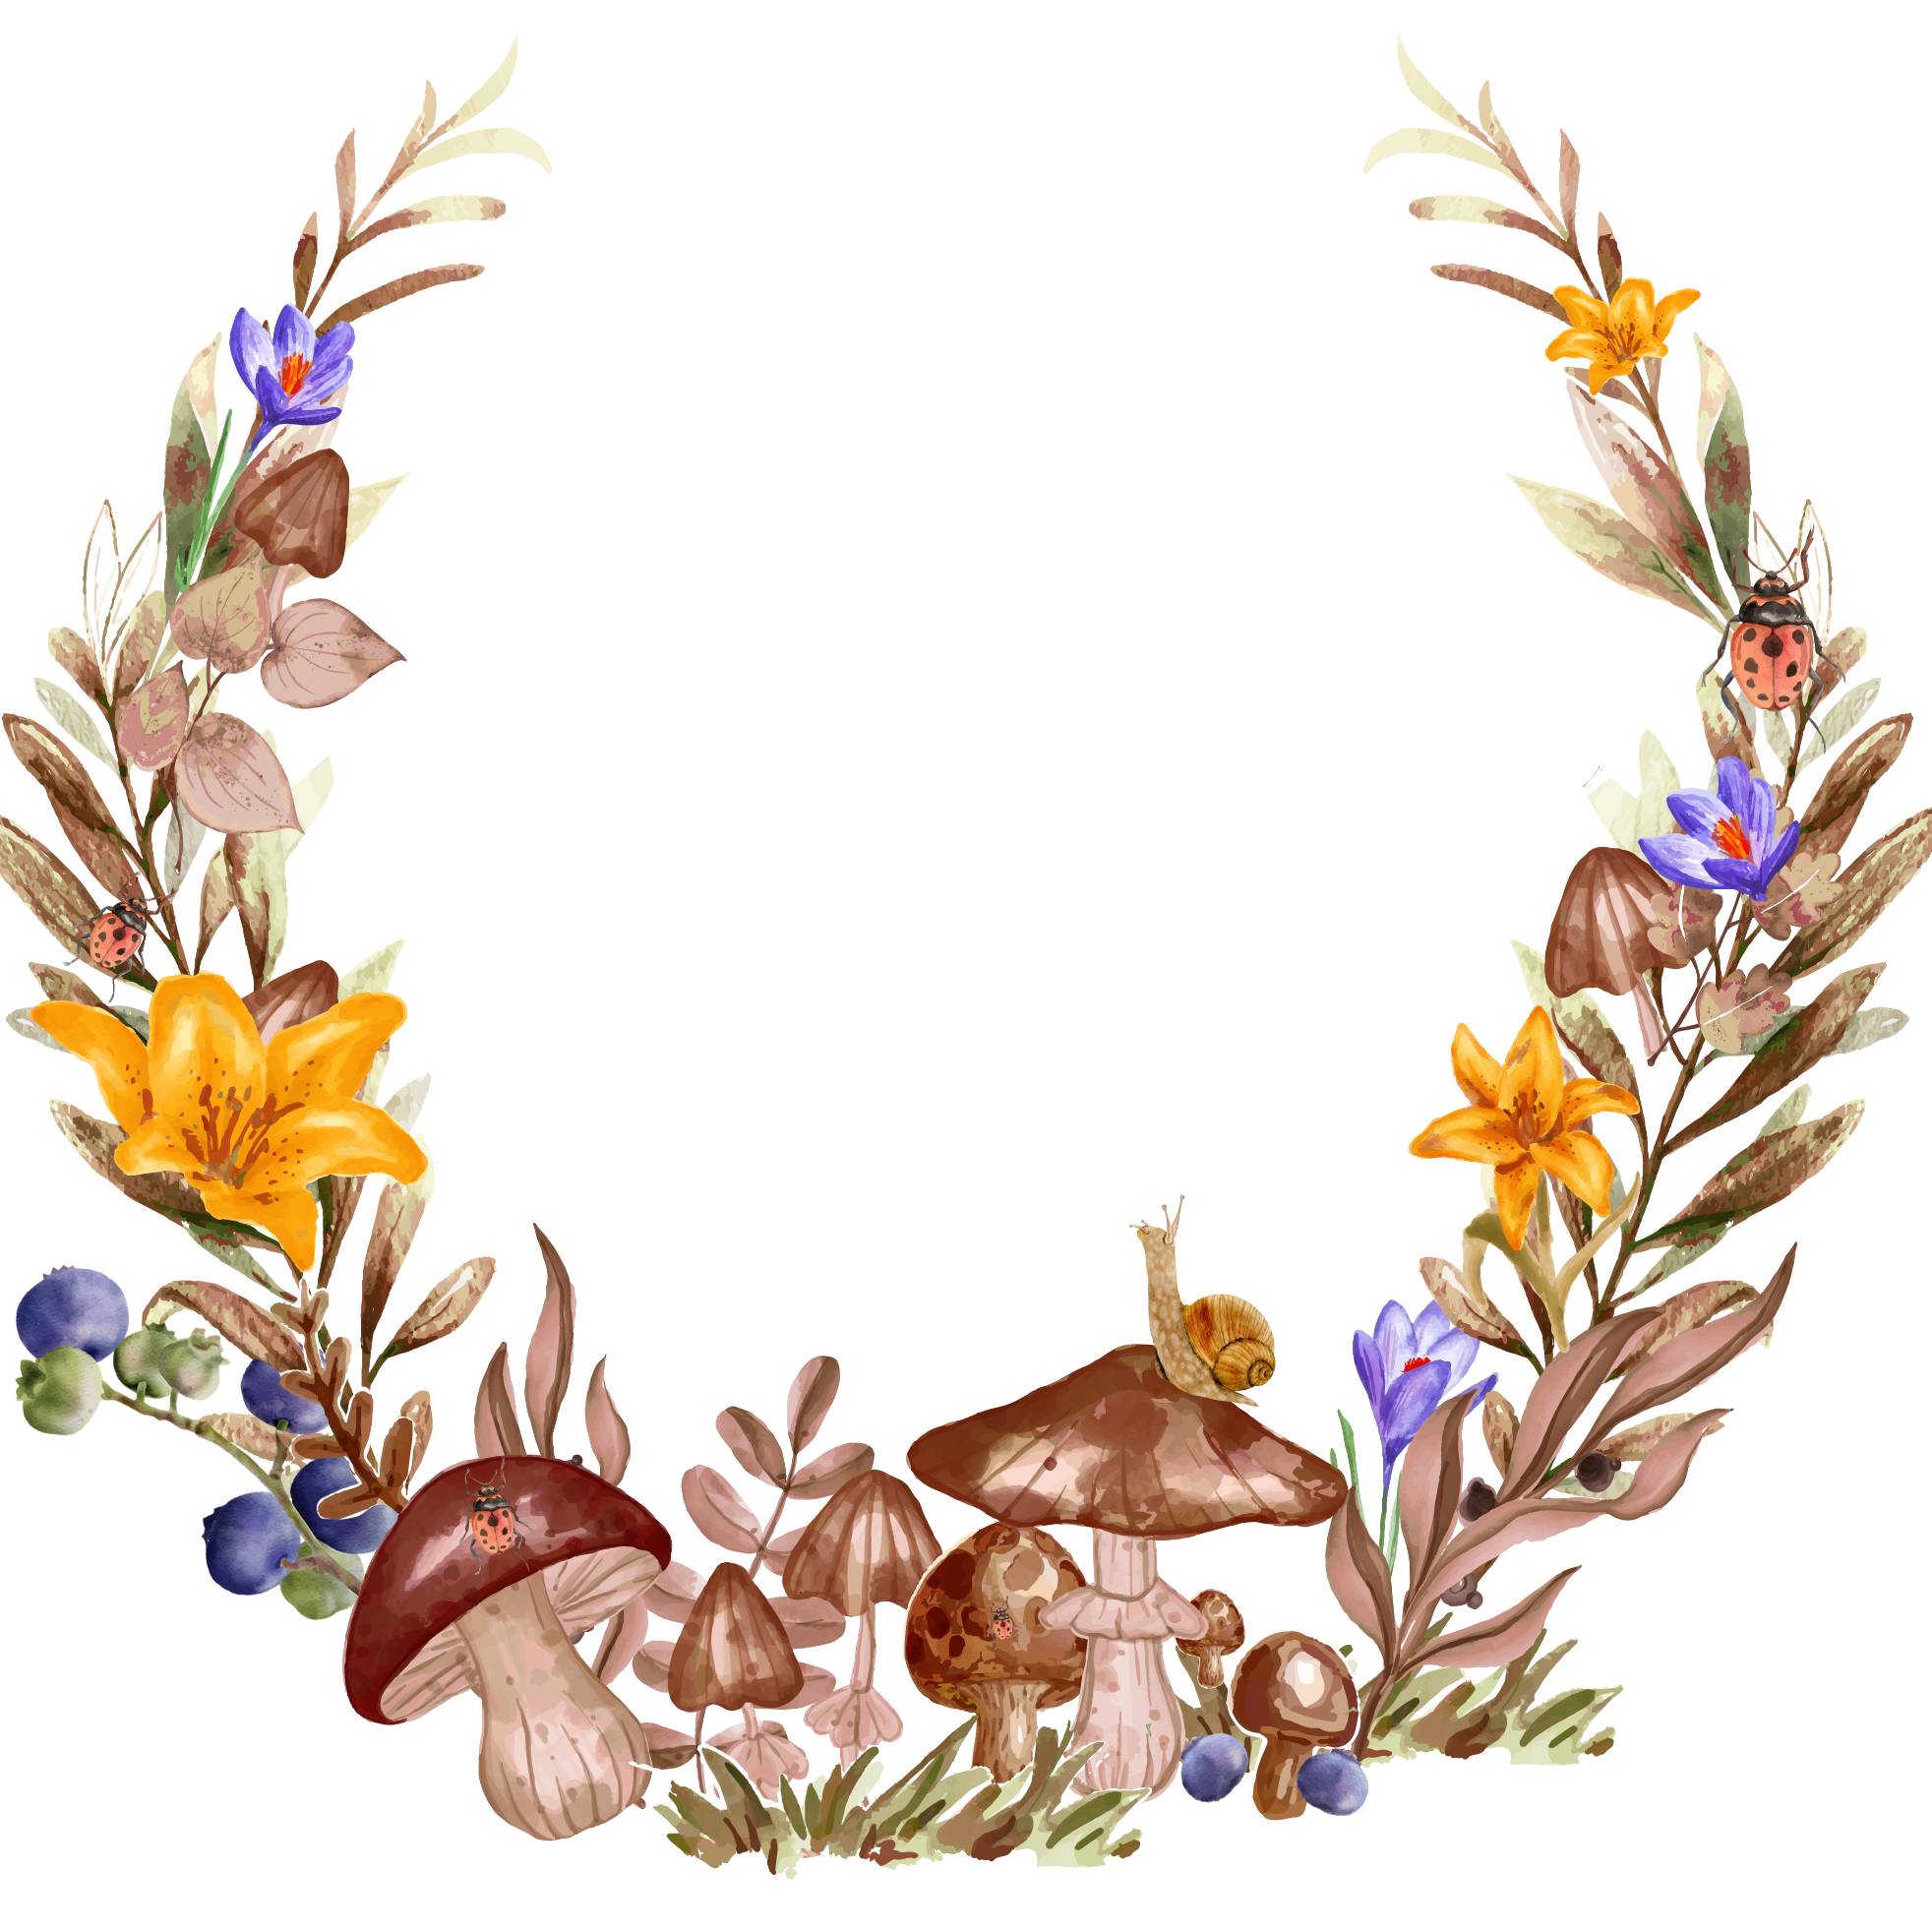 AmarEnthine Photography